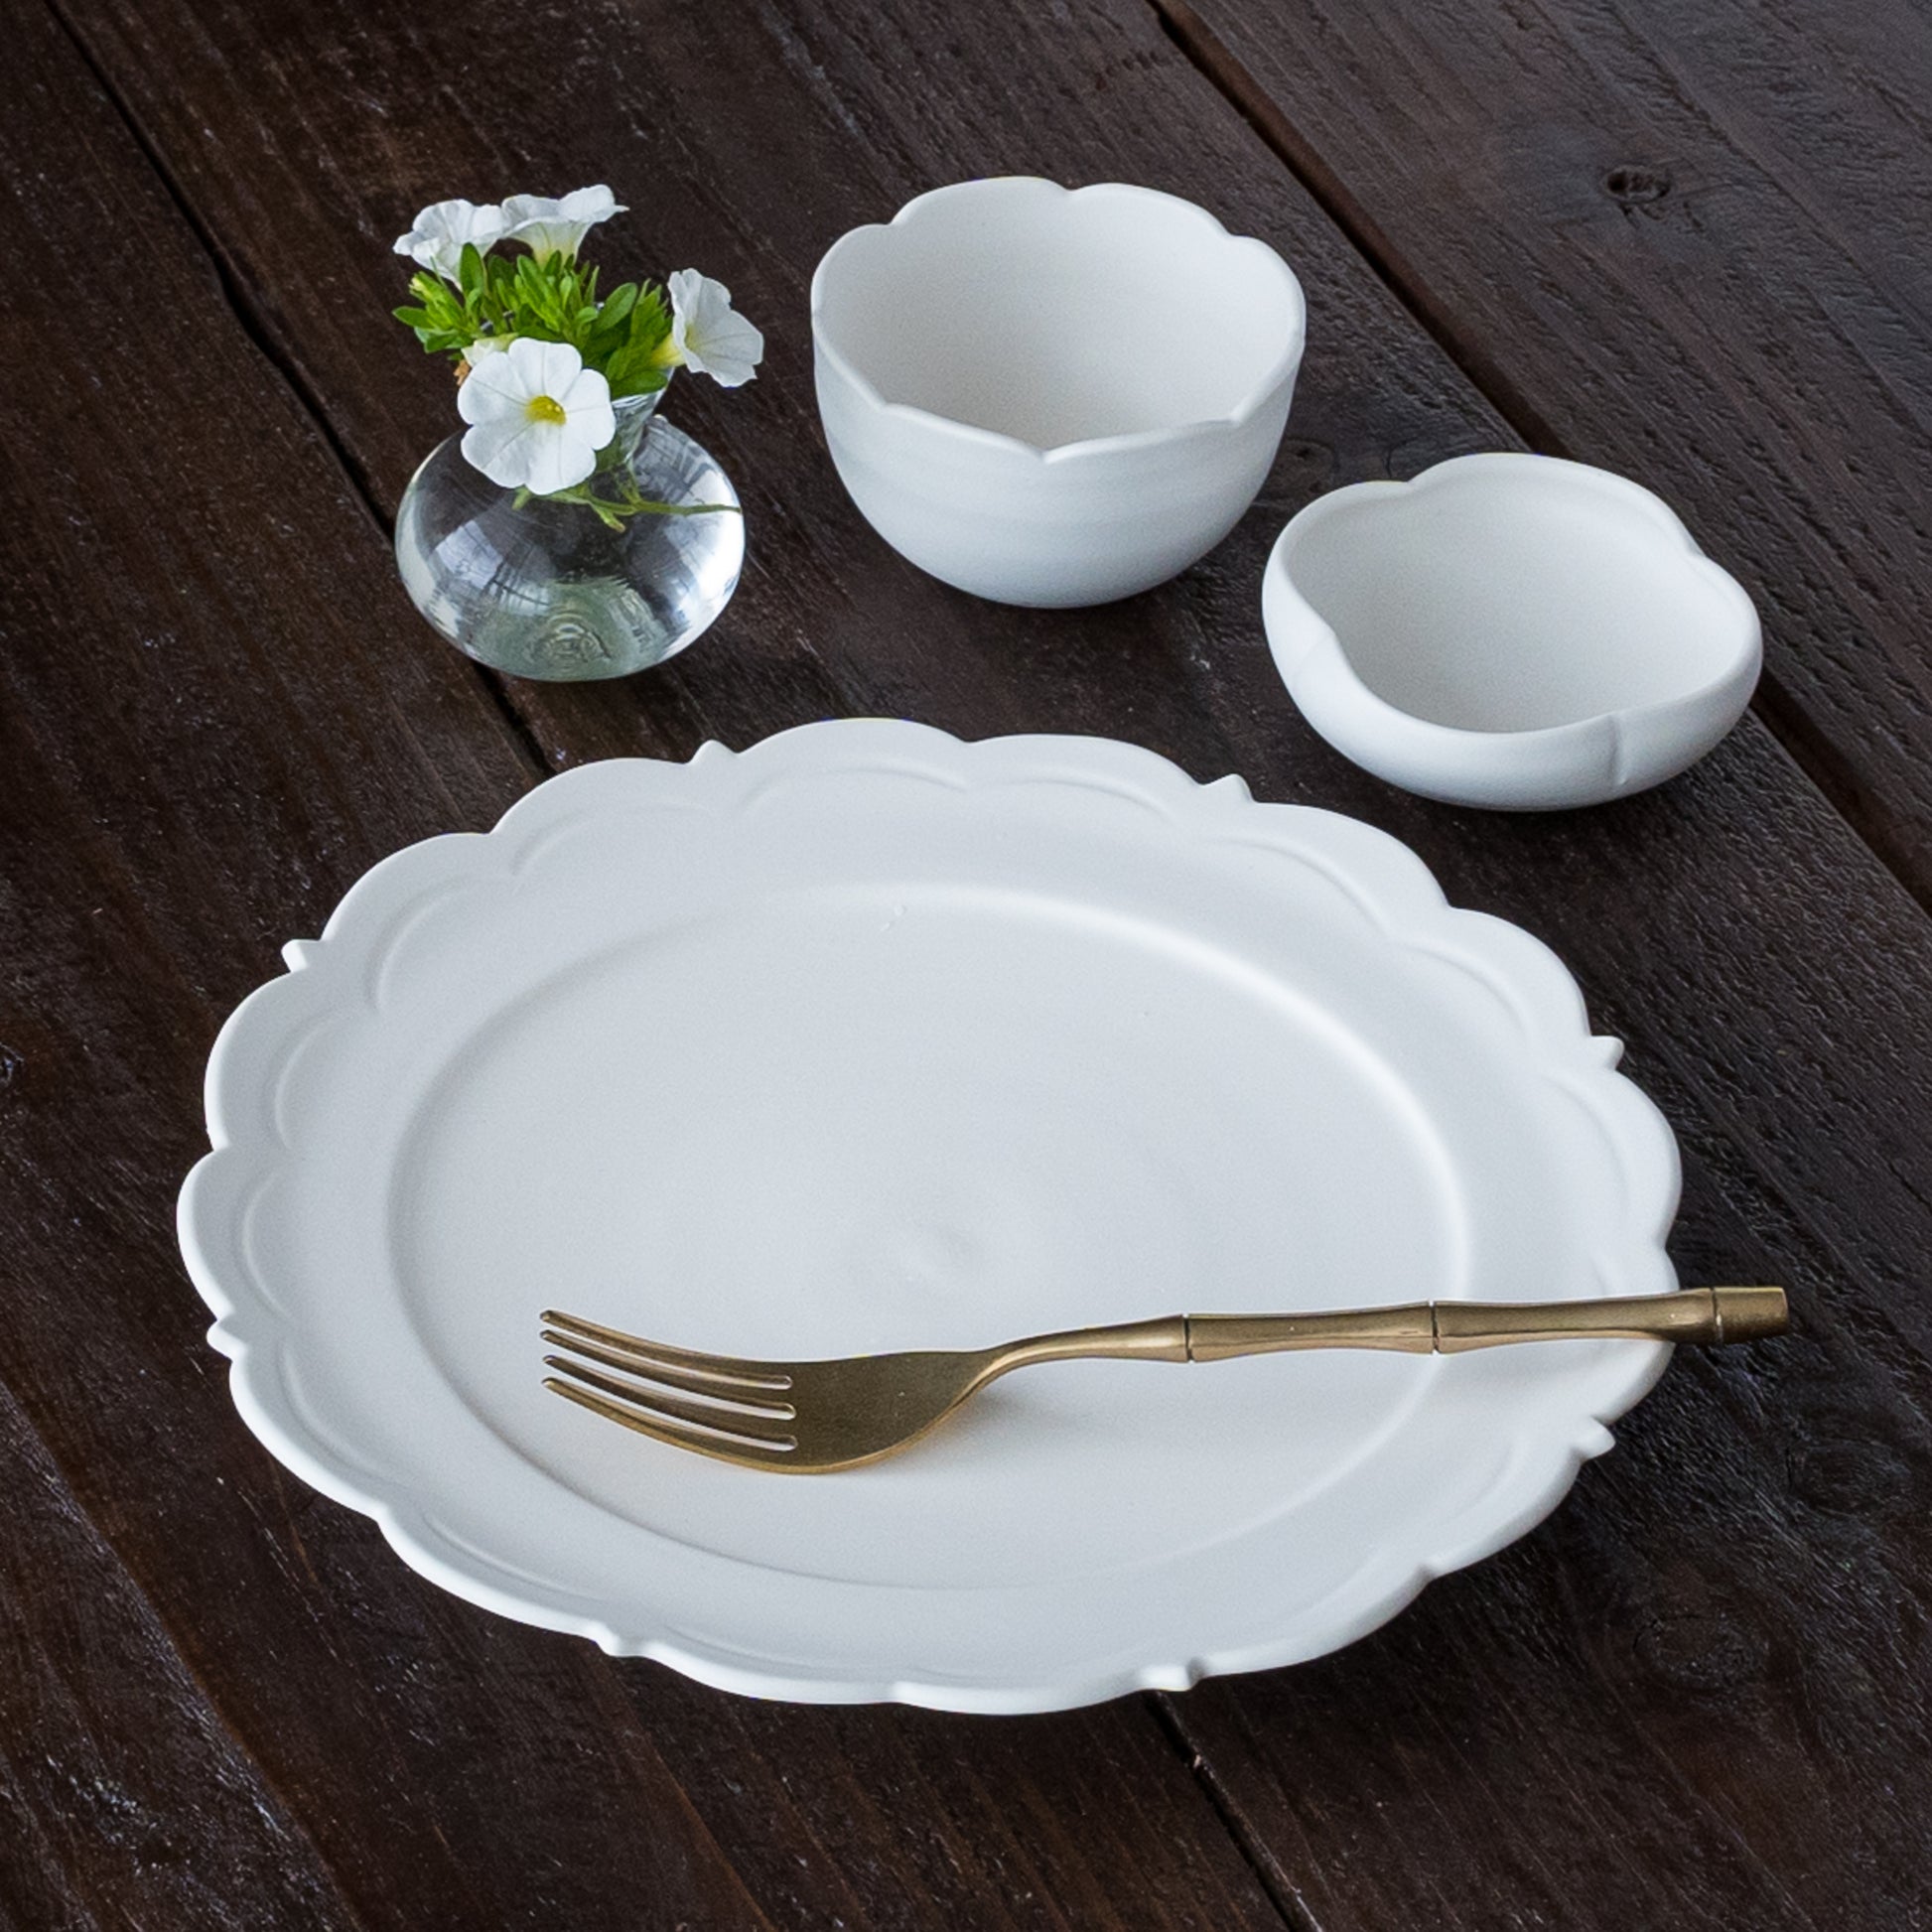 食卓が優雅な雰囲気に包まれる藤村佳澄さんの白磁のうつわ